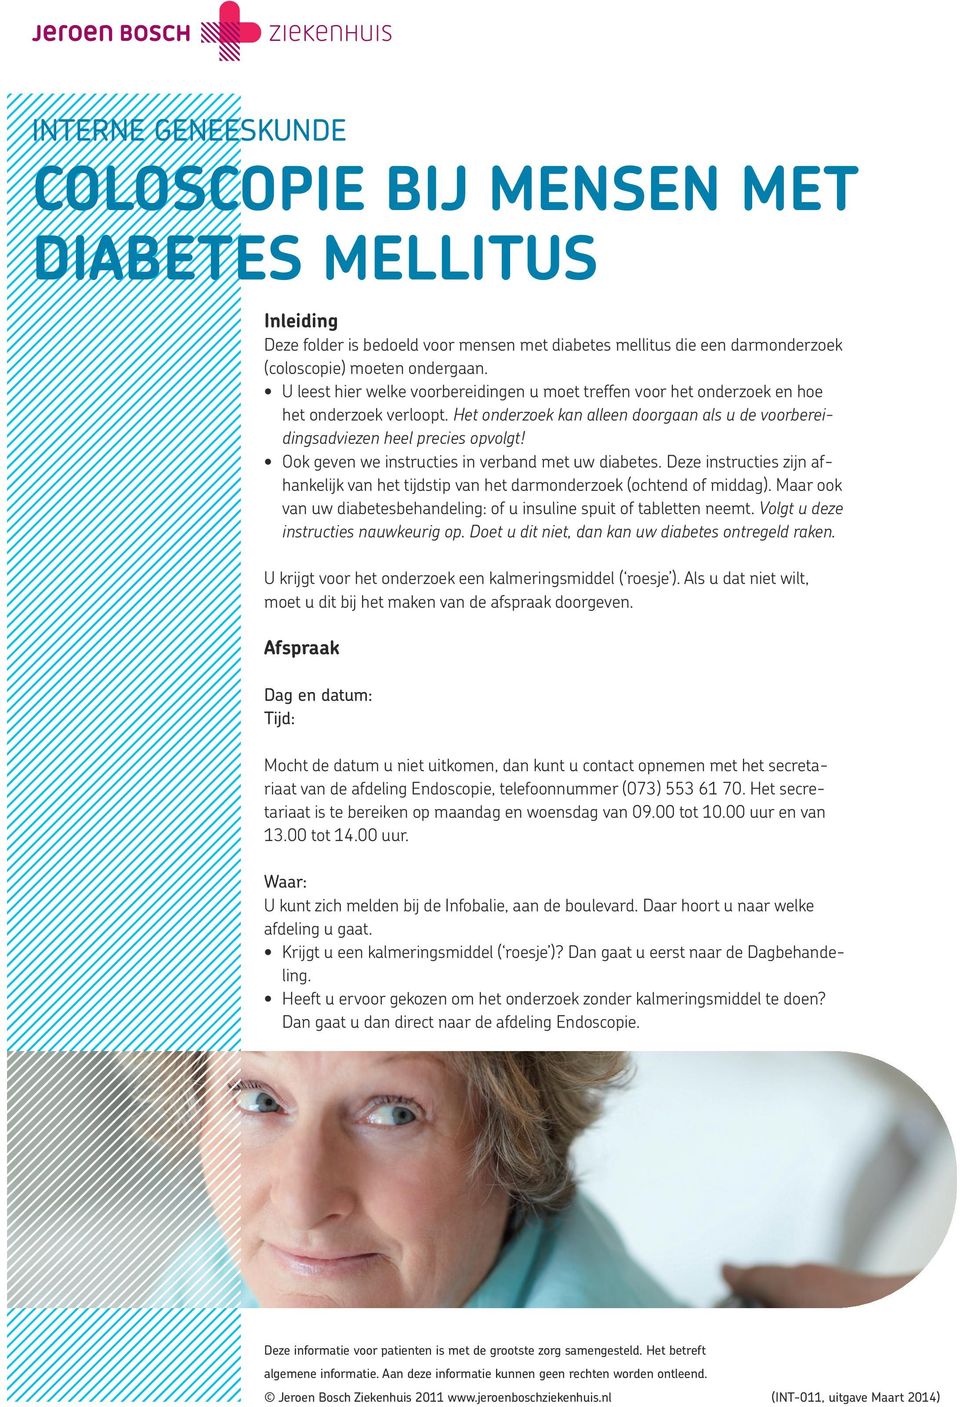 Ook geven we instructies in verband met uw diabetes. Deze instructies zijn afhankelijk van het tijdstip van het darmonderzoek (ochtend of middag).